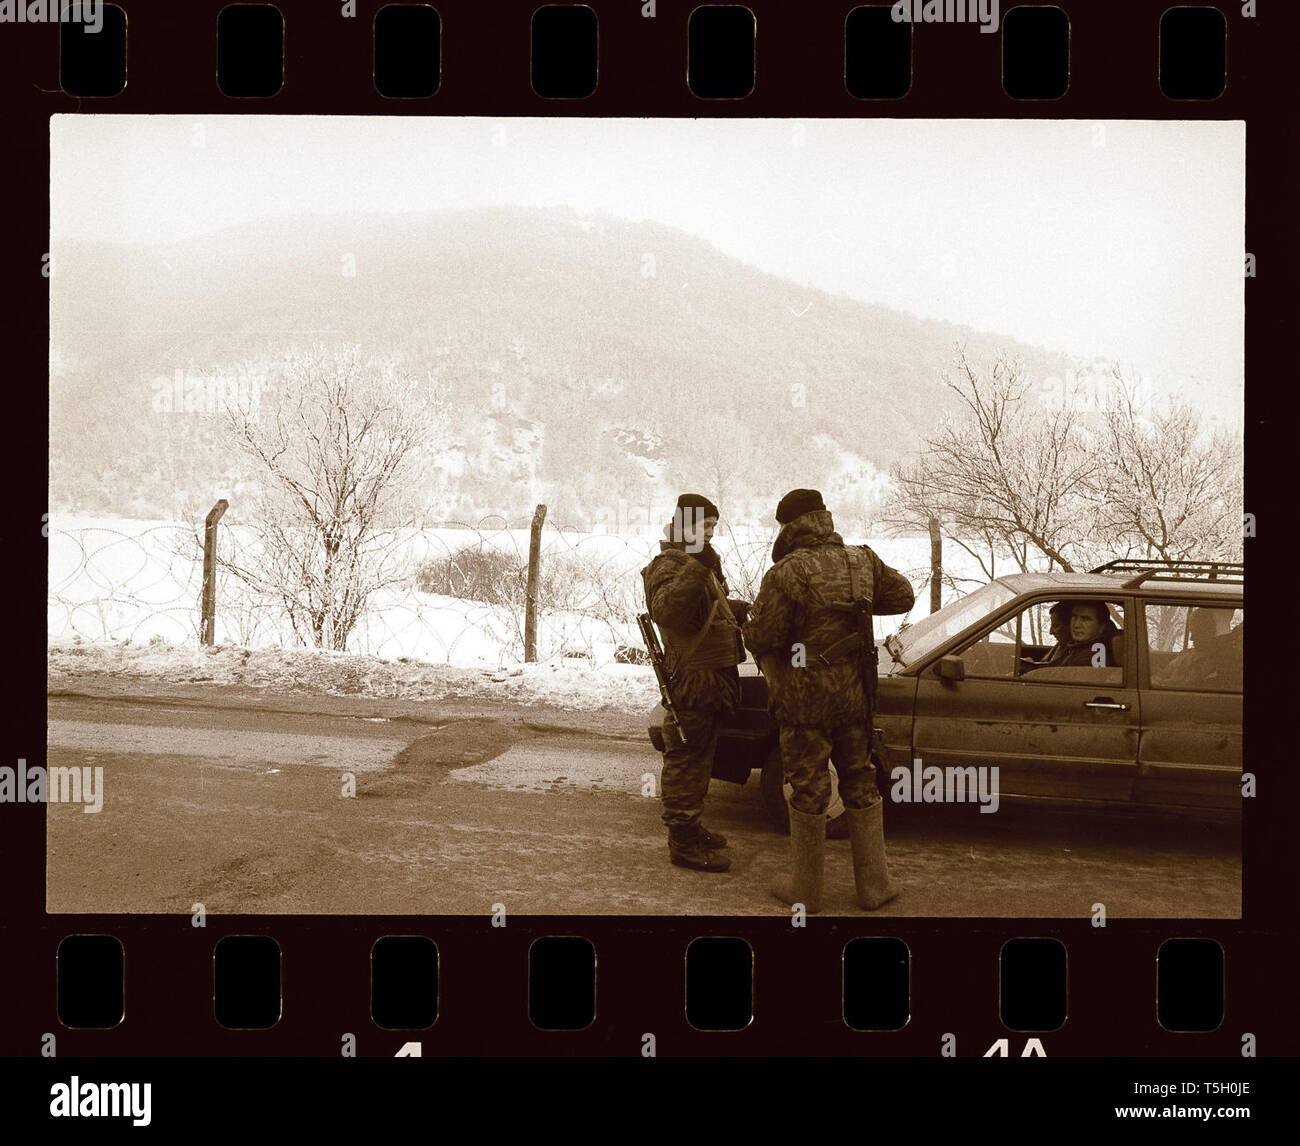 Aprile 24, 2019 - Ostriche, Kosovo, Jugoslavia - Esercito Russo soldati ispezione di documenti cartacei in un checkpoint vicino al confine Kosovo-Serbia. Gennaio 2002. (Credito Immagine: © Bill Putnam/ZUMA filo) Foto Stock